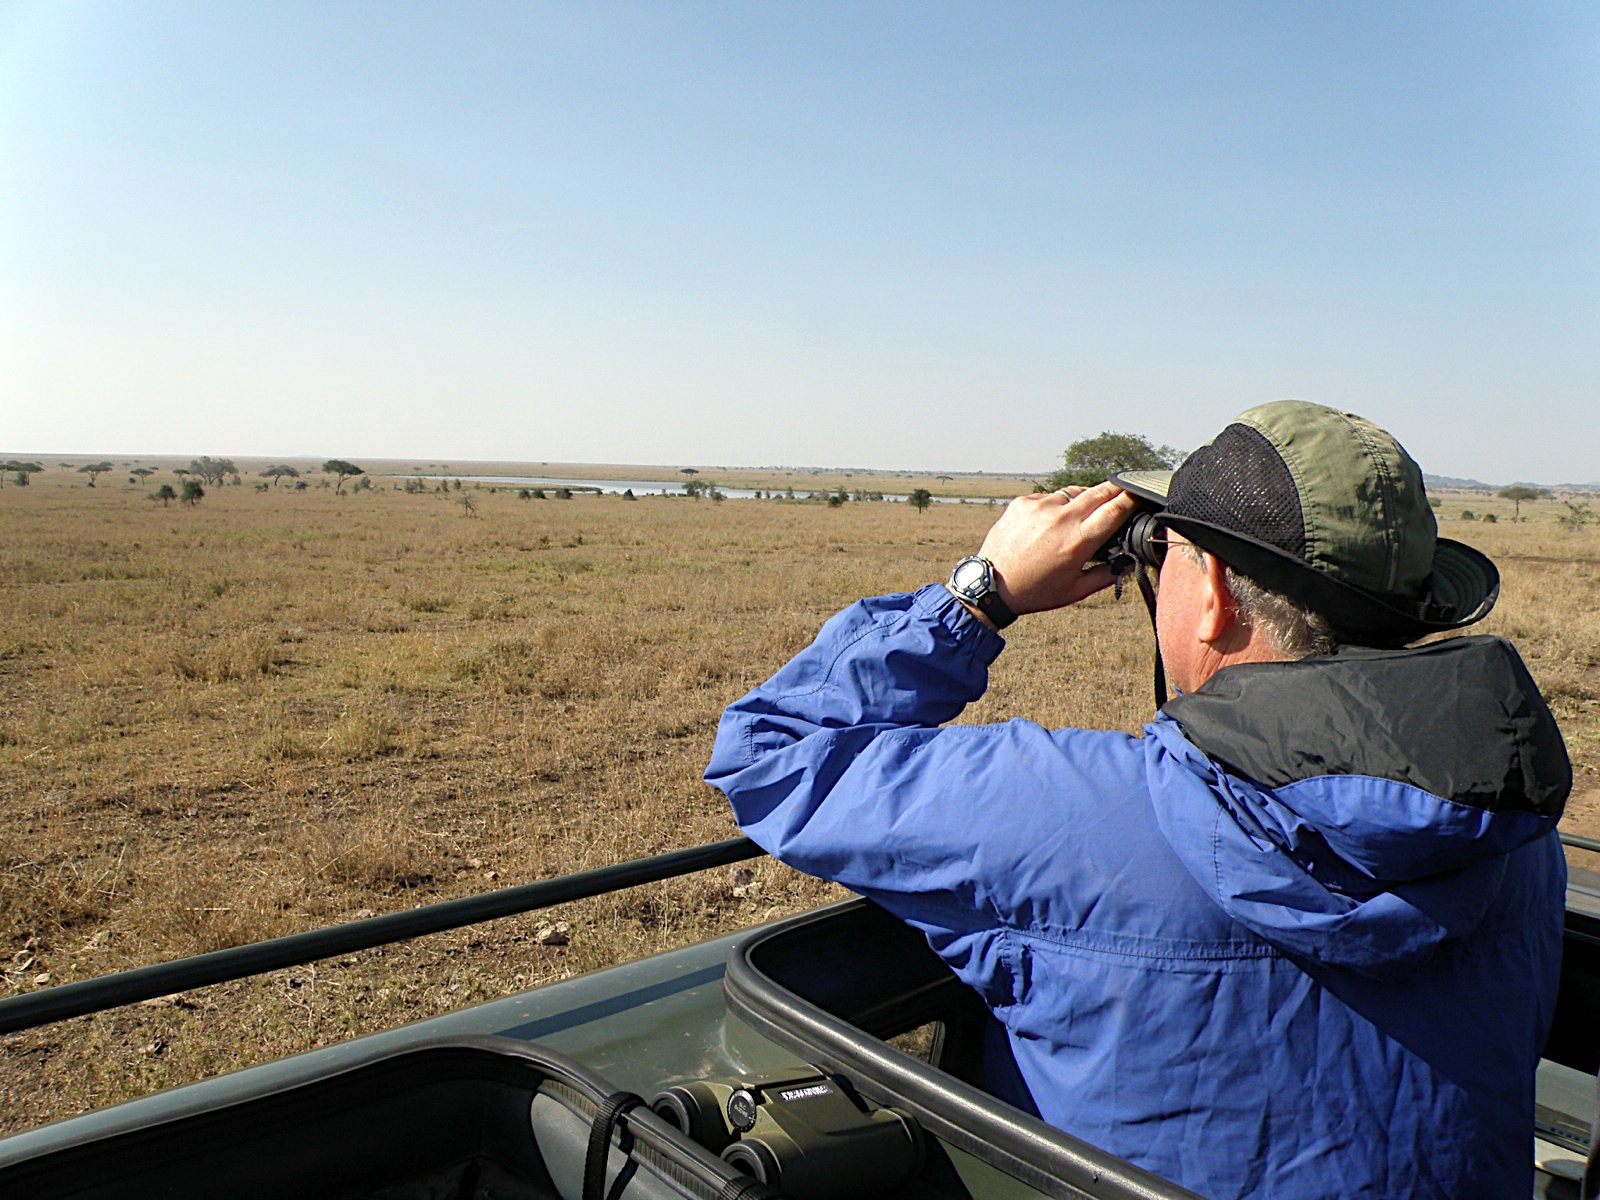 comment devenir guide de safari